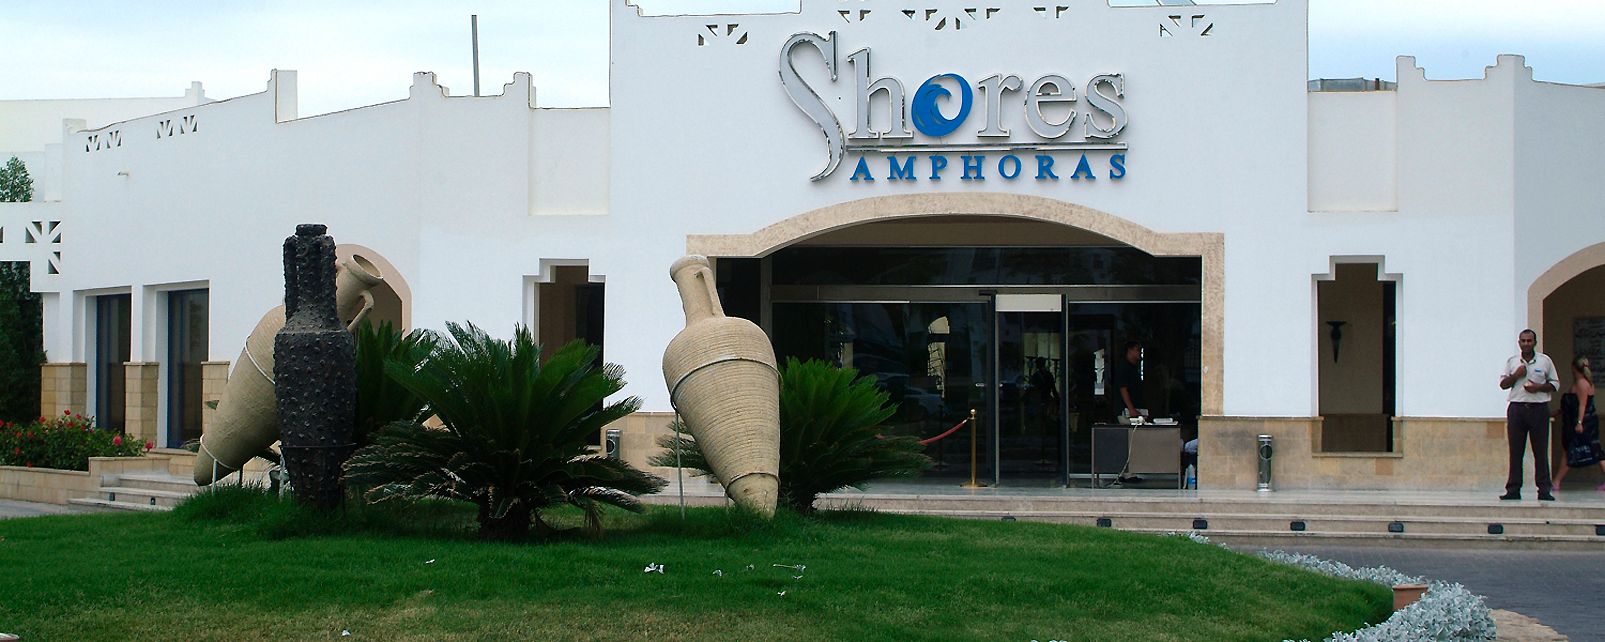 Hotel Shores Amphoras